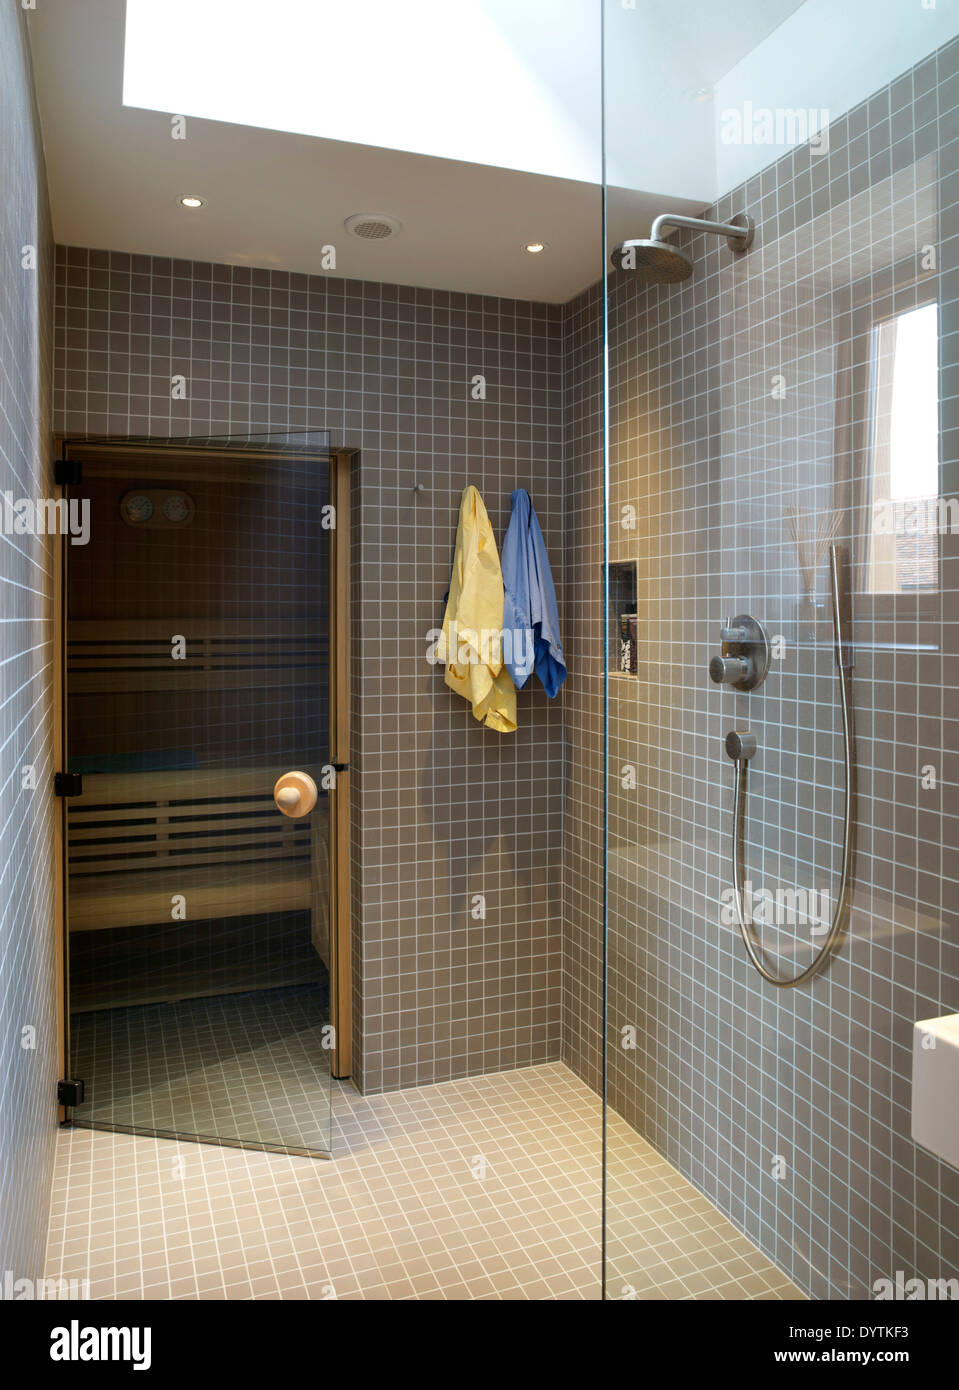 Douche dans salle d'eau moderne, Champ Place Barns, Surrey Banque D'Images